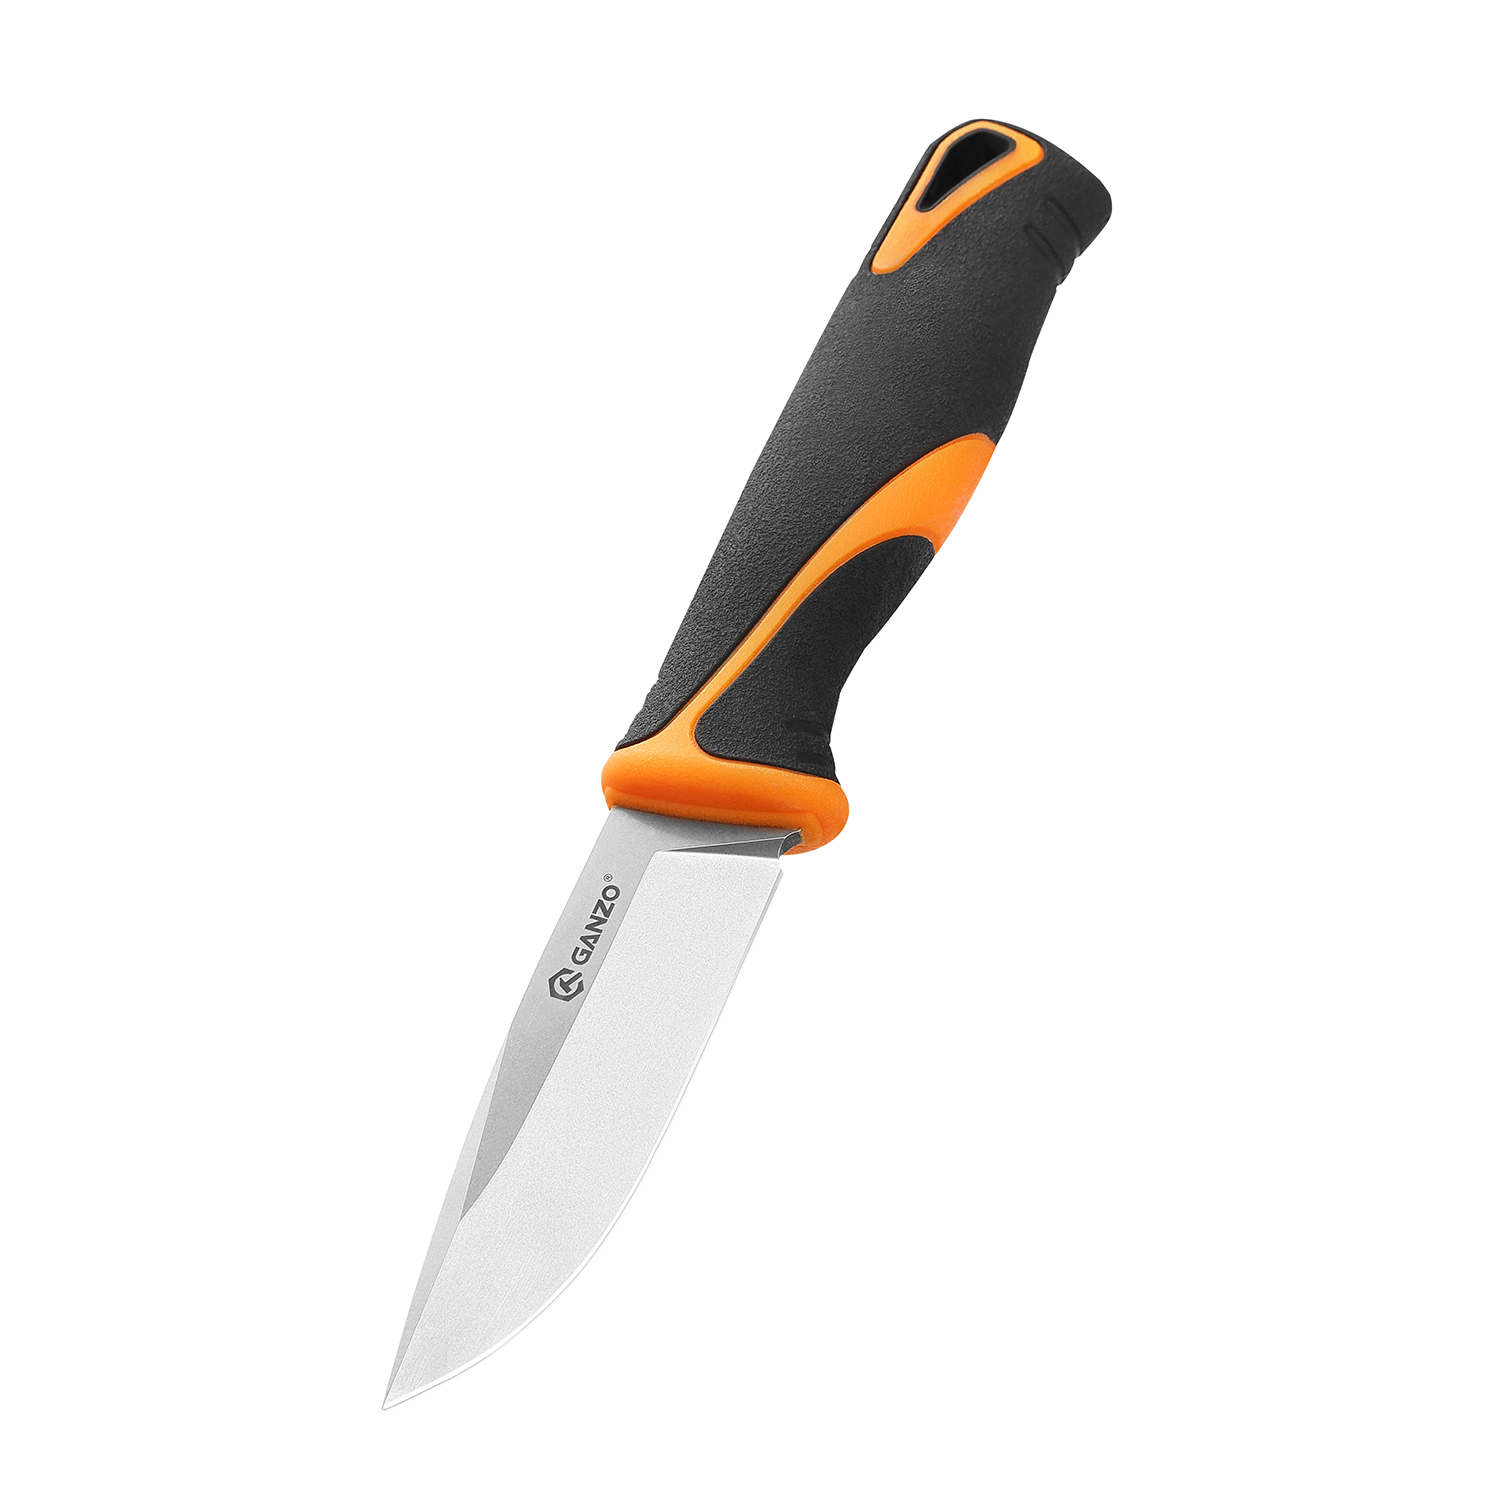 Нож Ganzo Fixed/Case, сталь 9Cr14Mov, рукоять прорезиненный пластик, чернo-оранжевый